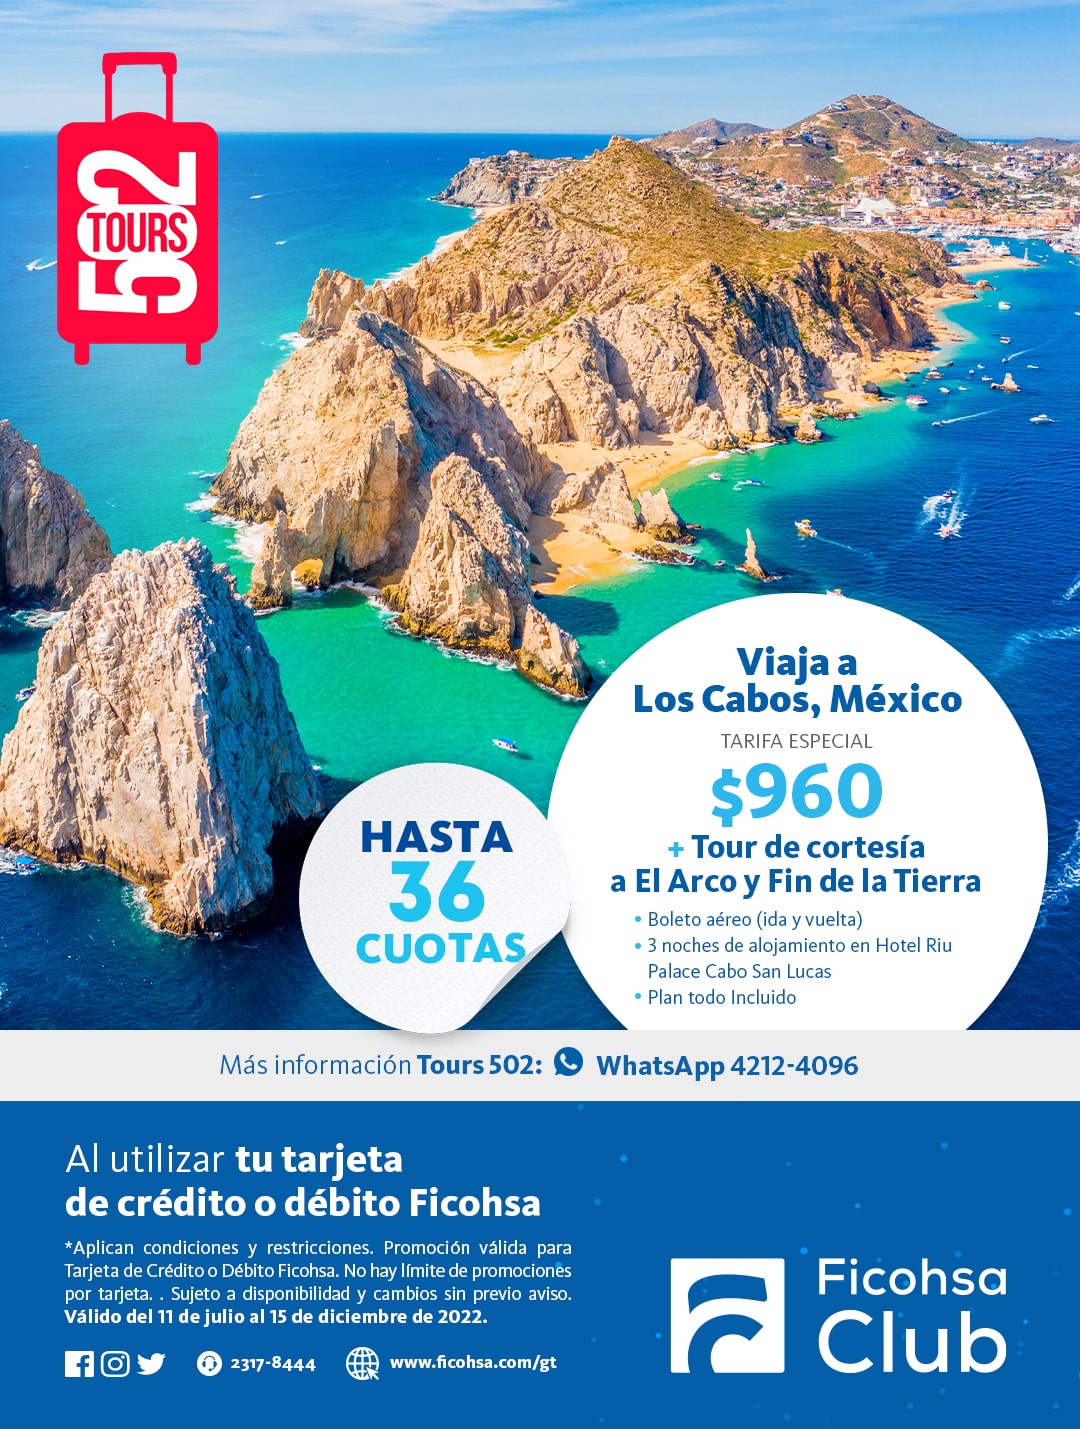 Viaja a México o Los Cabos ¡con paquetes ESPECIALES! con Tours 502